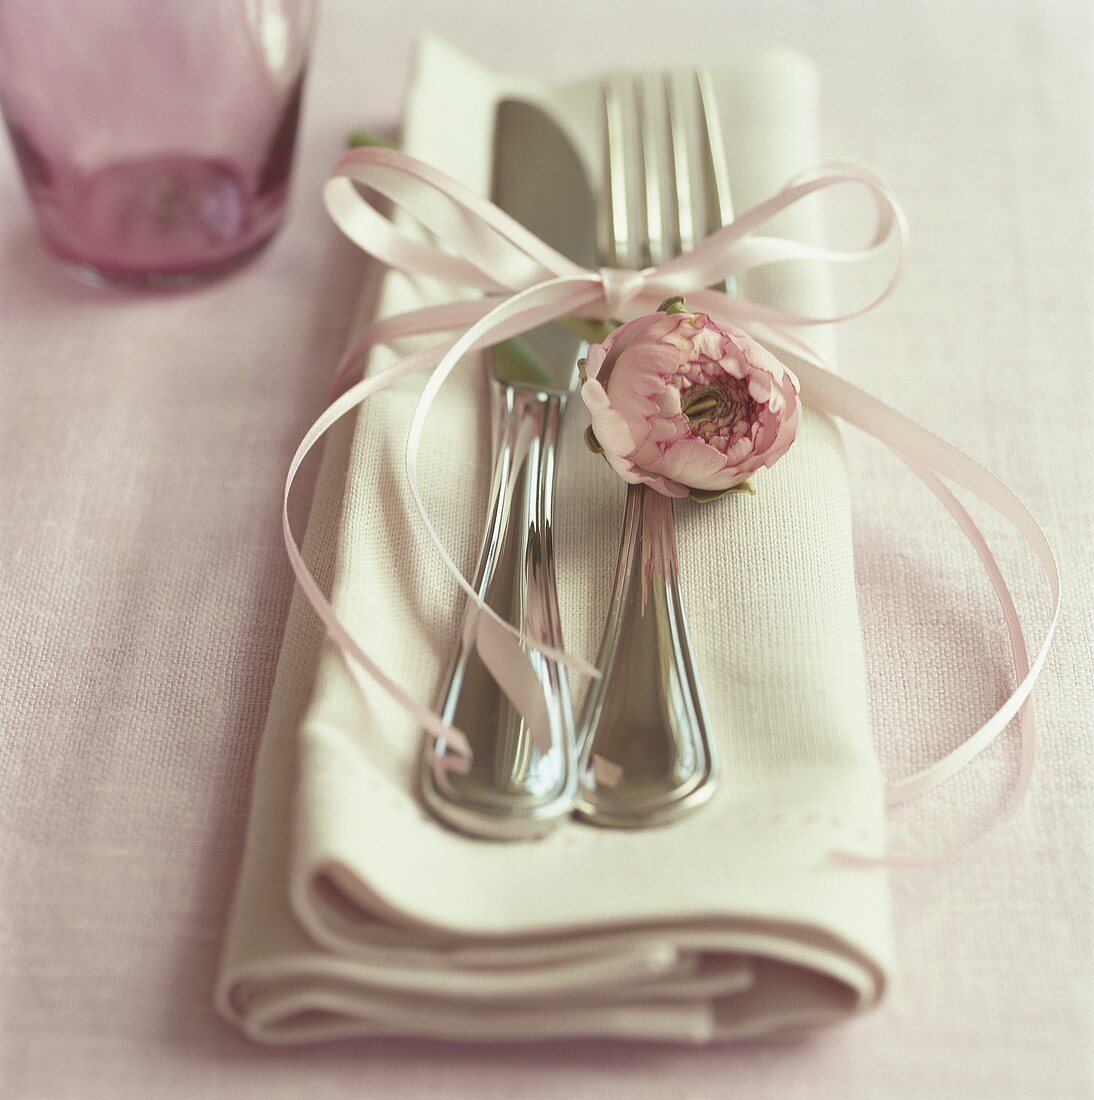 Silberbesteck mit Schleife und rosa Blüte auf Stoffserviette